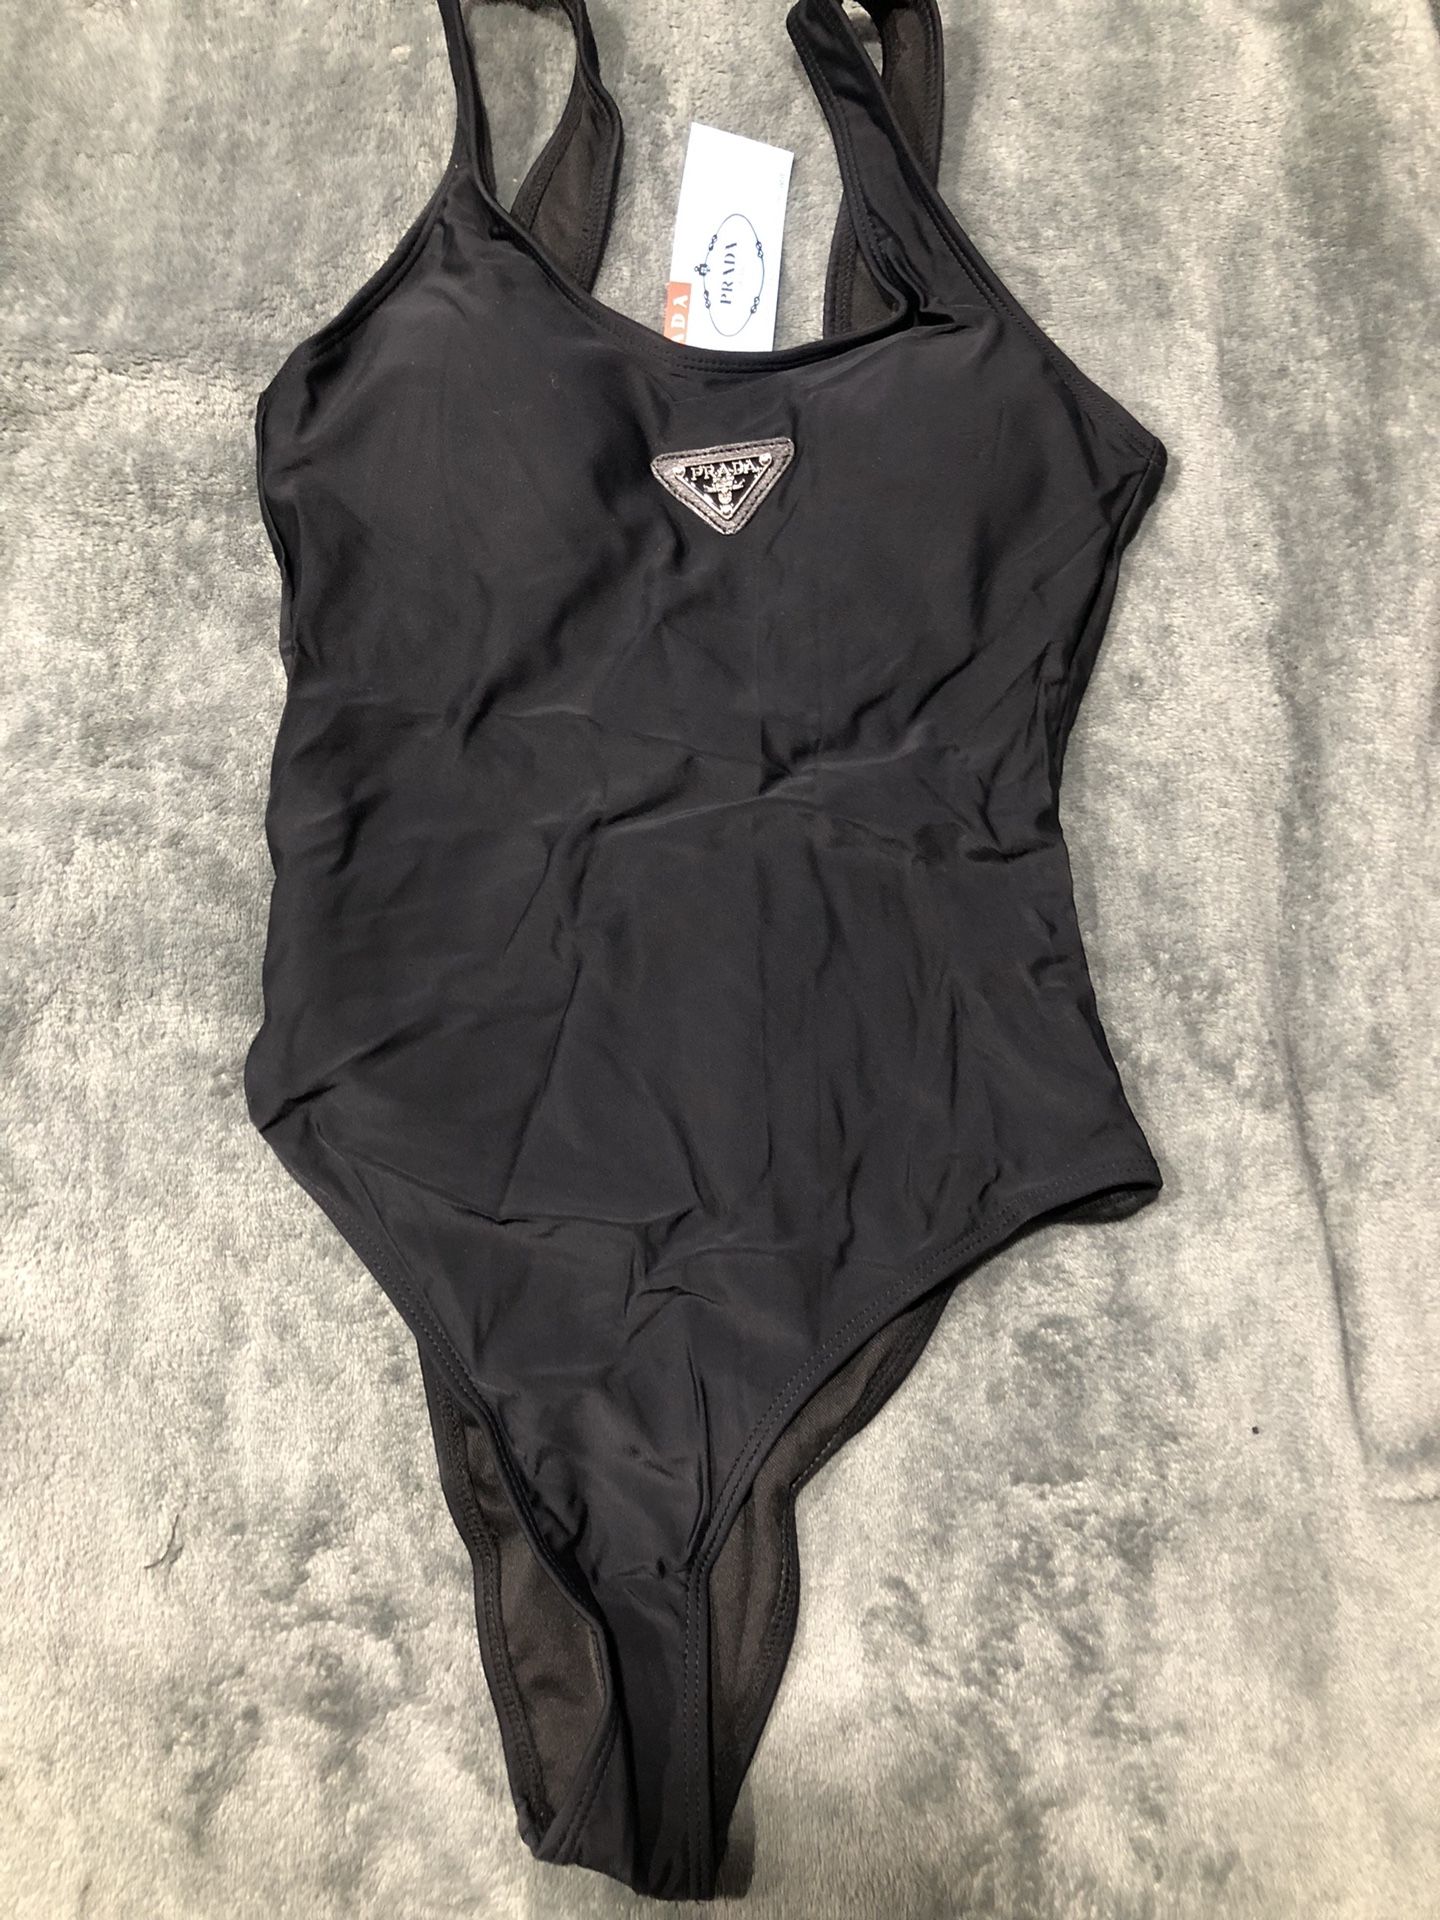 Woman’s Black Swimsuit.             S,m,l,xl